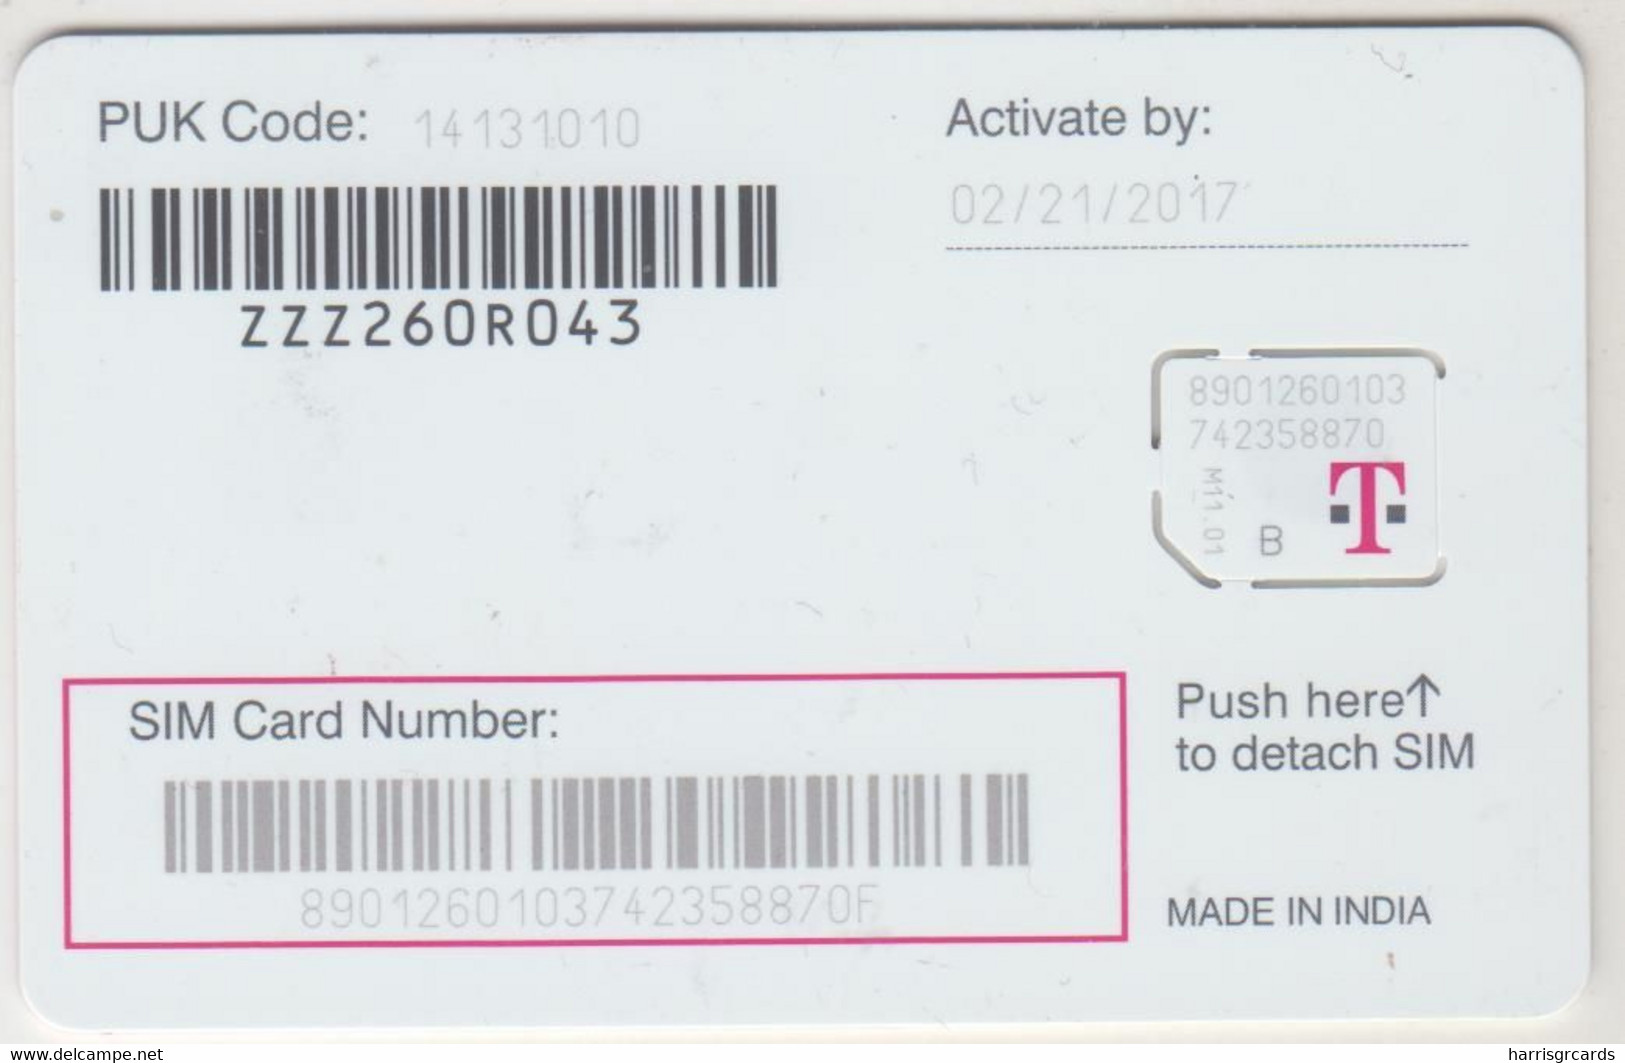 USA - T Mobile GSM Card , Mint - Cartes à Puce